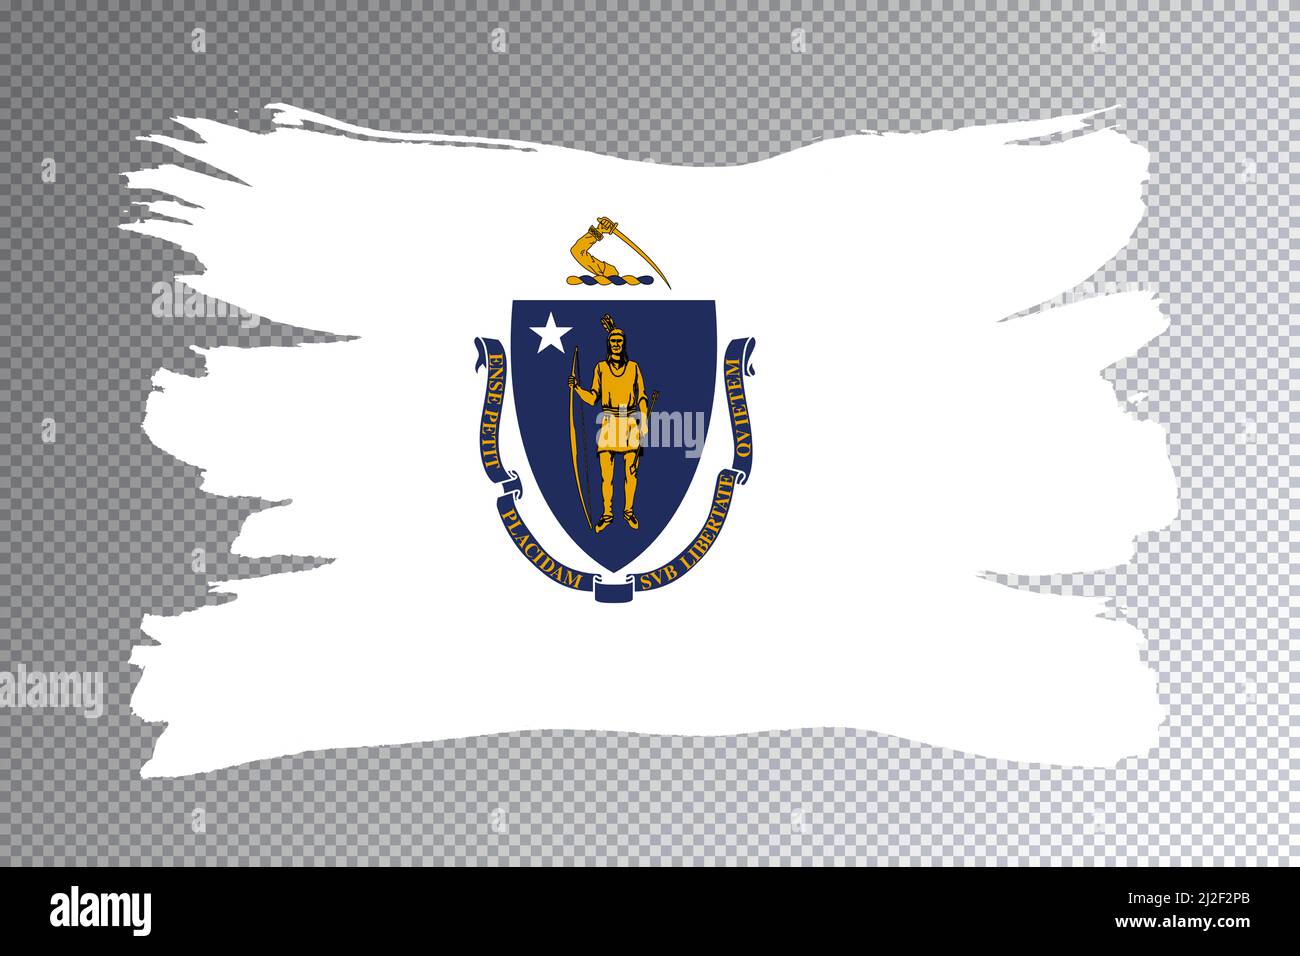 Massachusetts state flag, Massachusetts flag transparent background